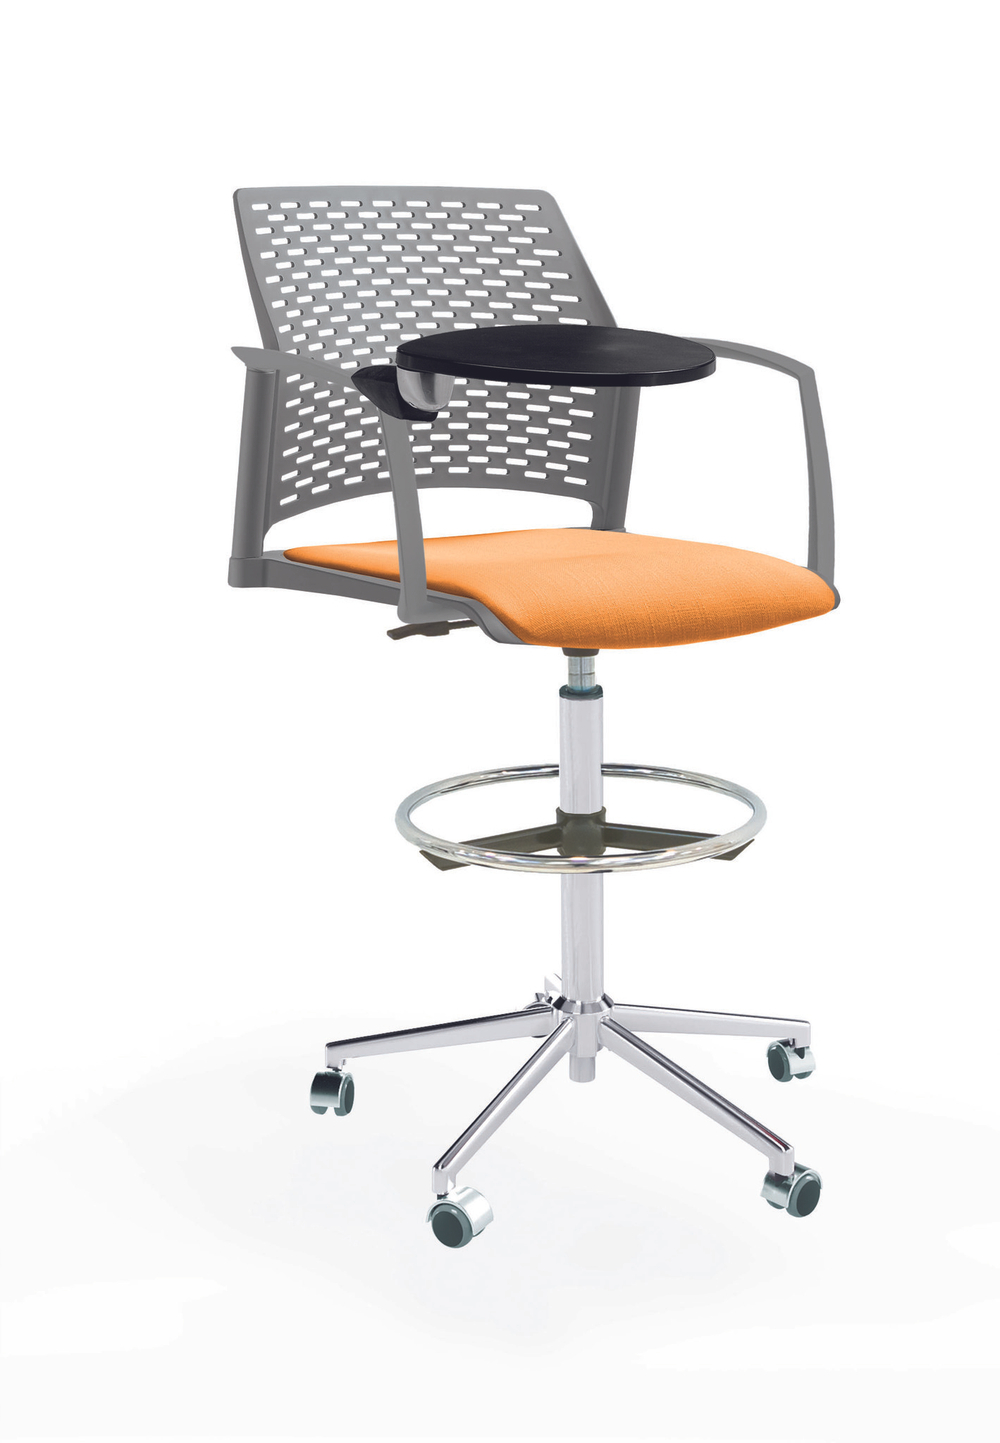 Кресло Rewind каркас хром, пластик серый, база стальная хромированная, с закрытыми подлокотниками и пюпитром, сиденье оранжевое